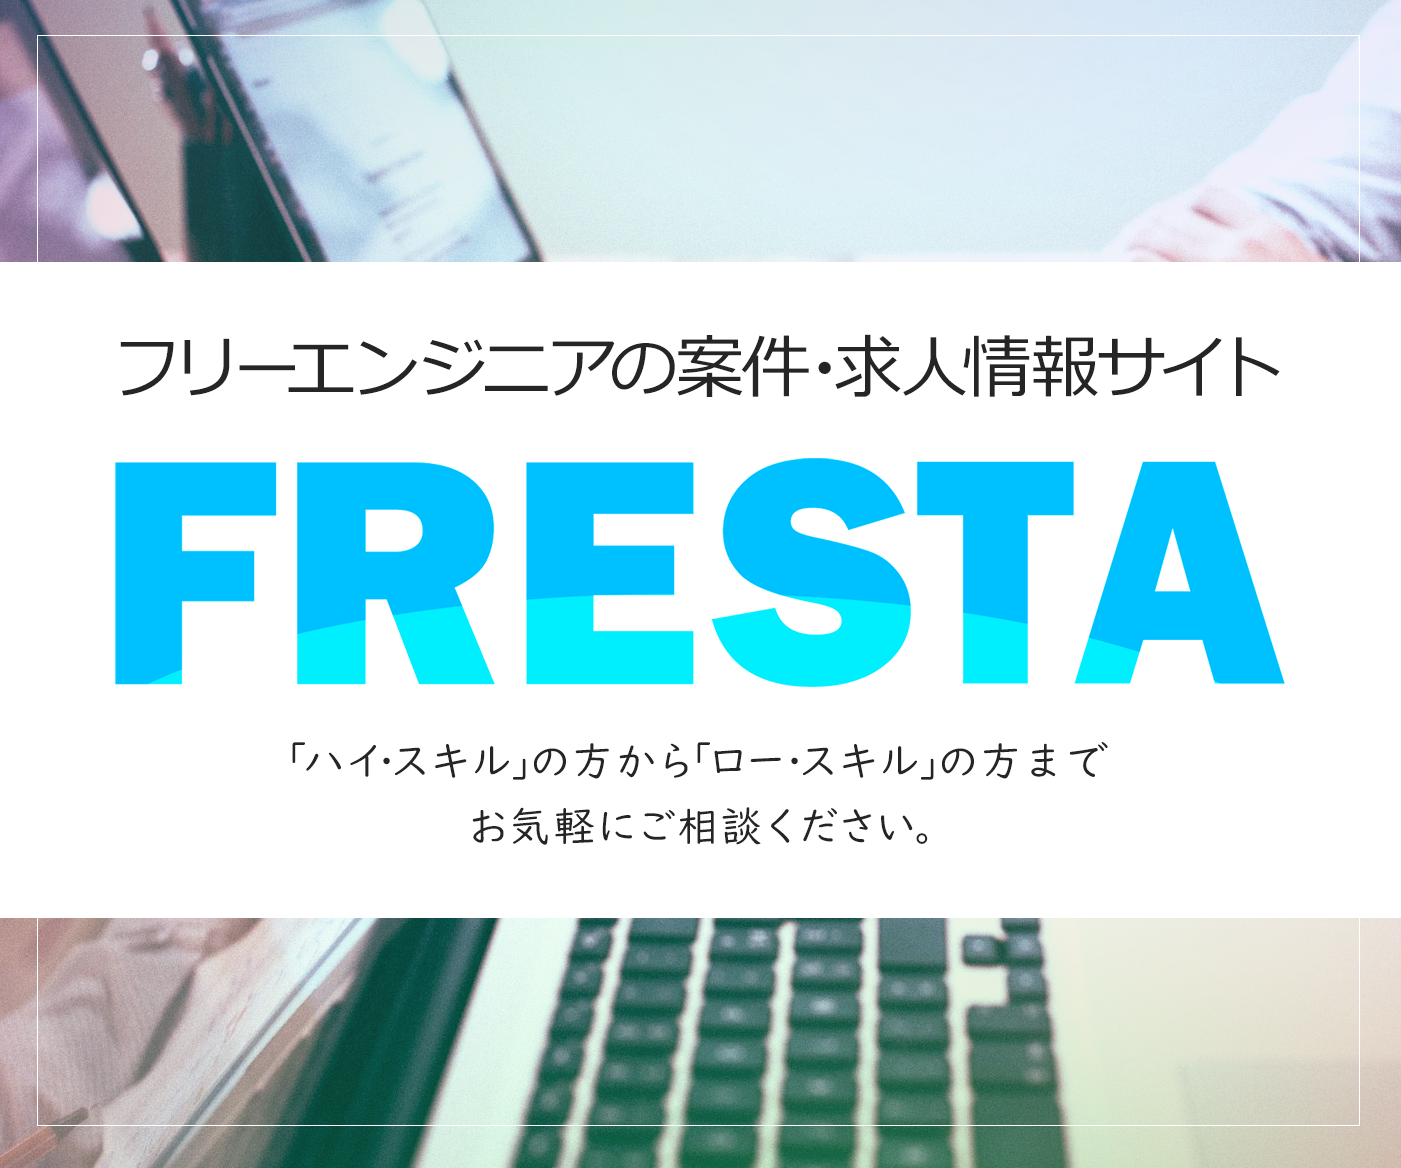 フリーエンジニア向け 案件情報・IT求人情報「FRESTA」